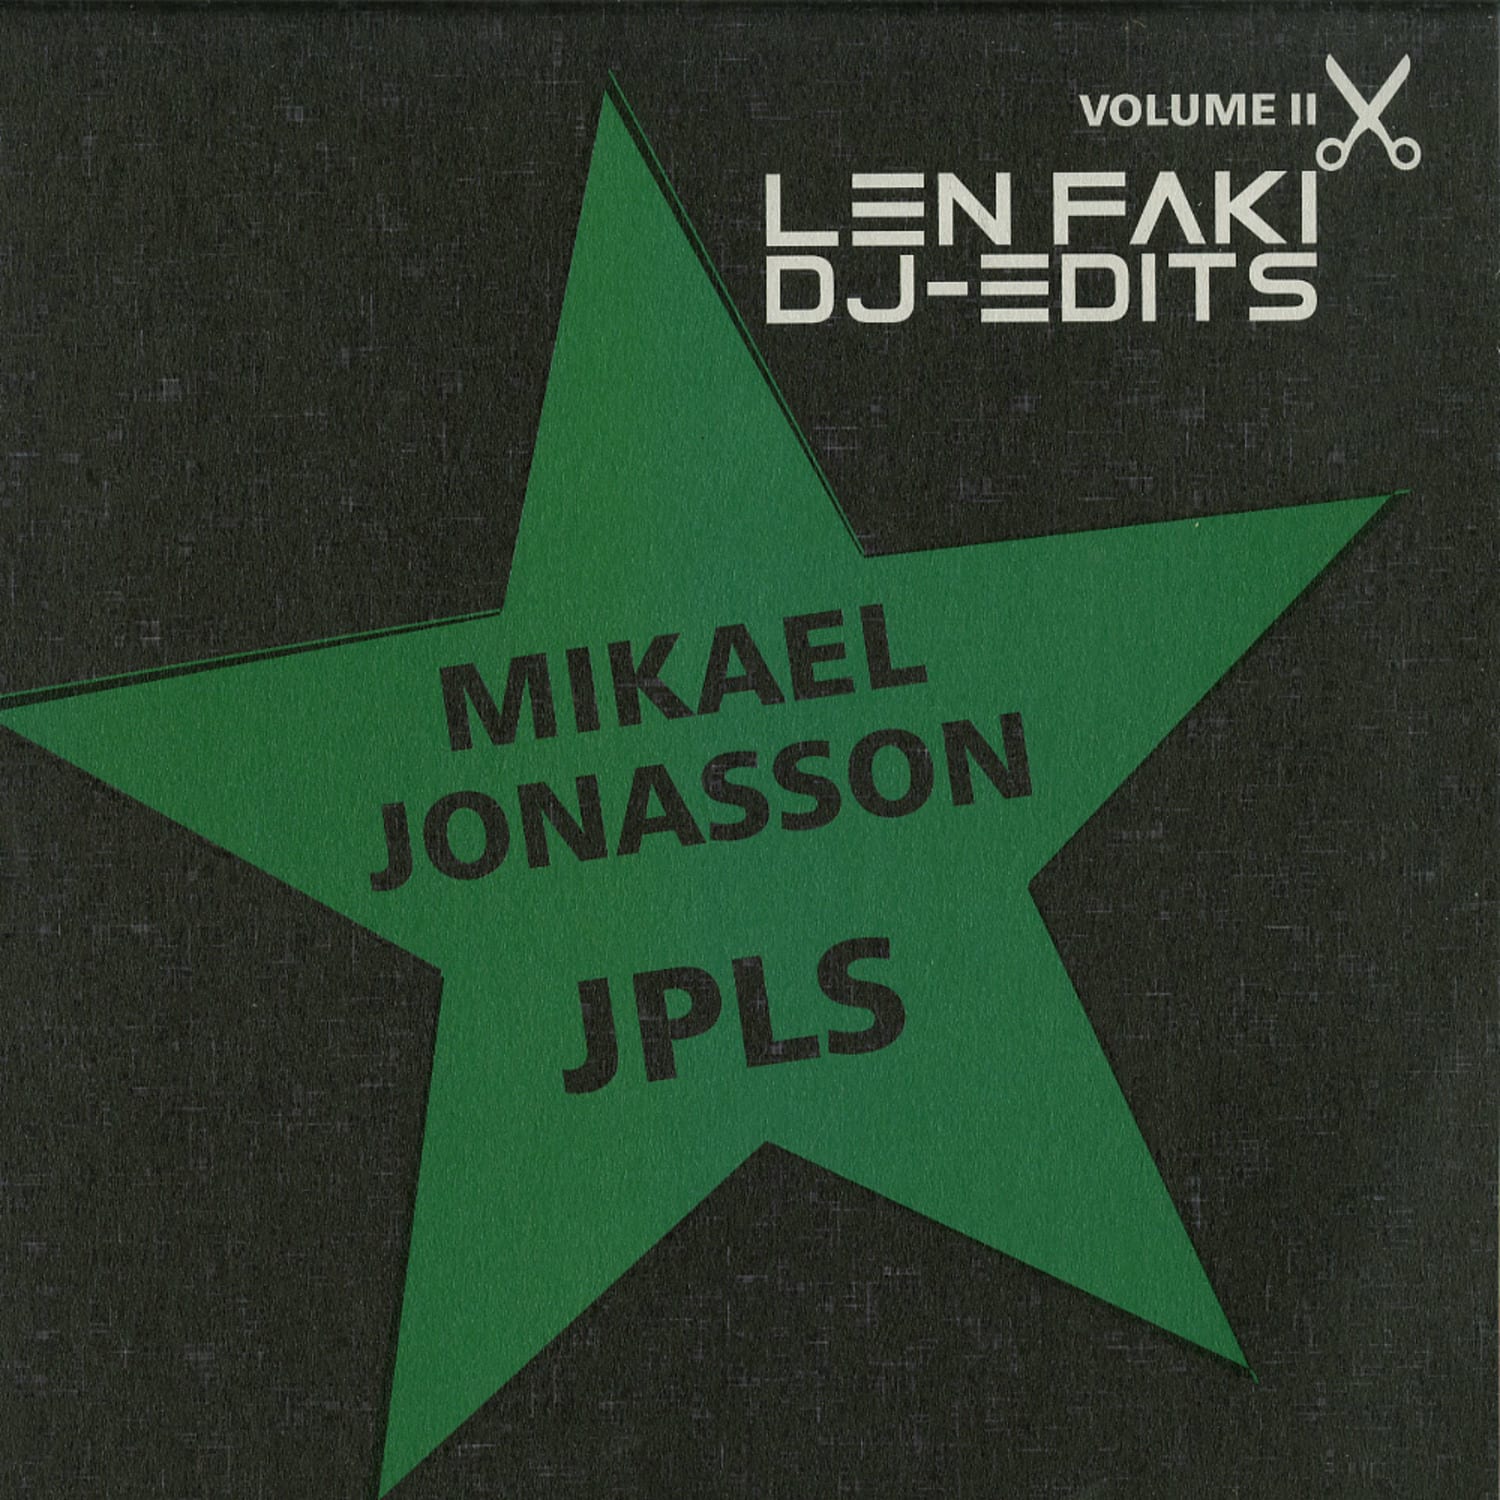 Mikael Jonasson / JPLS - DJ EDITS VOL. 2 BY LEN FAKI